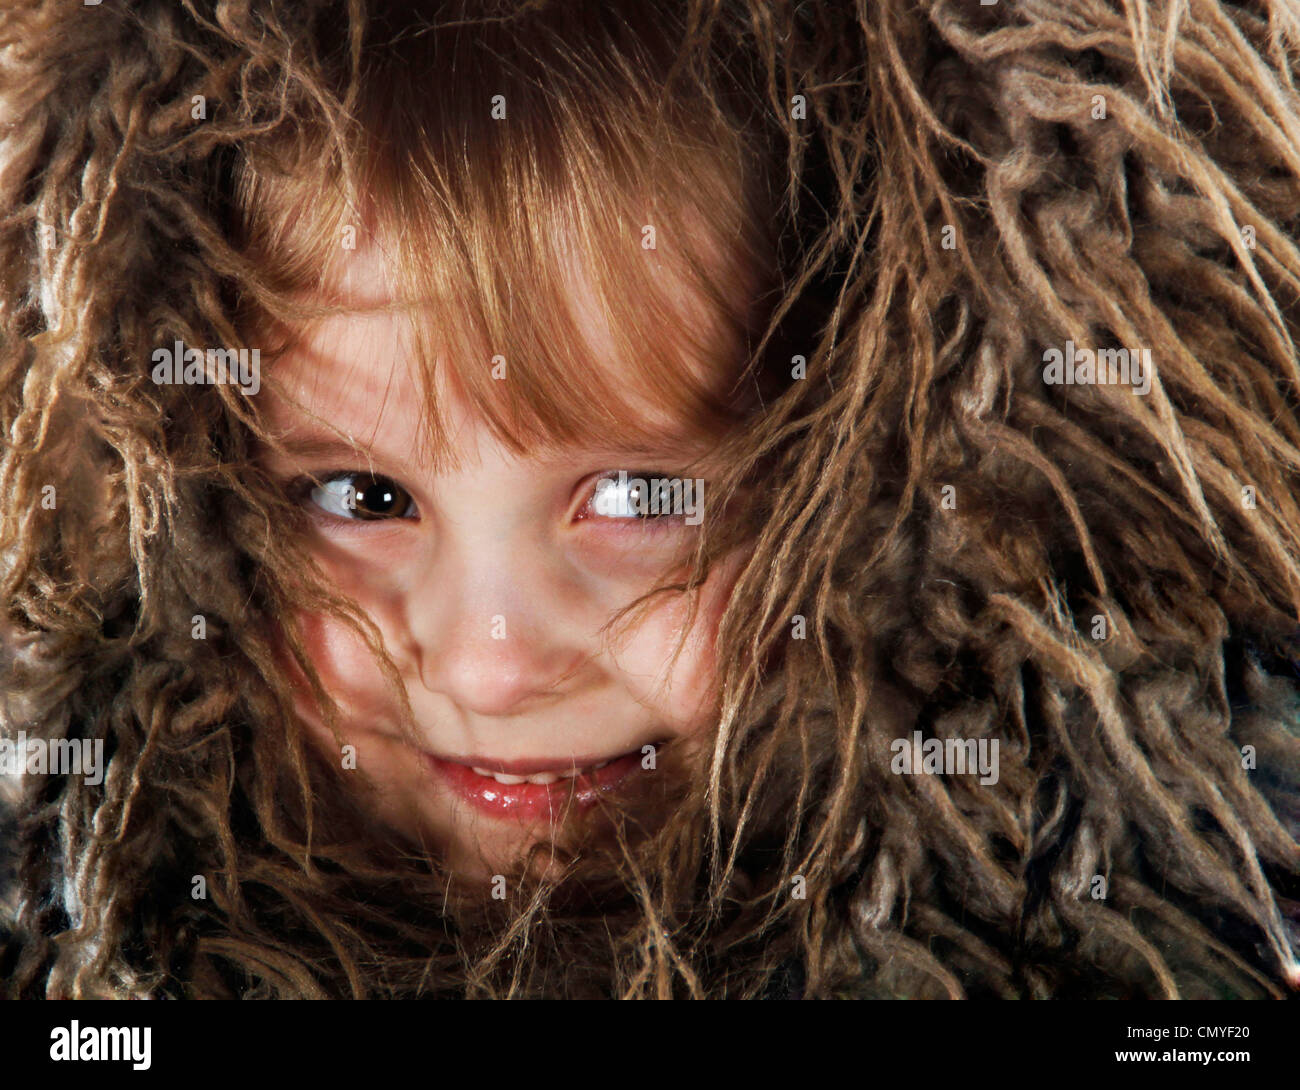 Fotografie eines Kindes süß und schüchtern mit Fell rund um Gesicht versteckt sich vor der Kamera hautnah Stockfoto